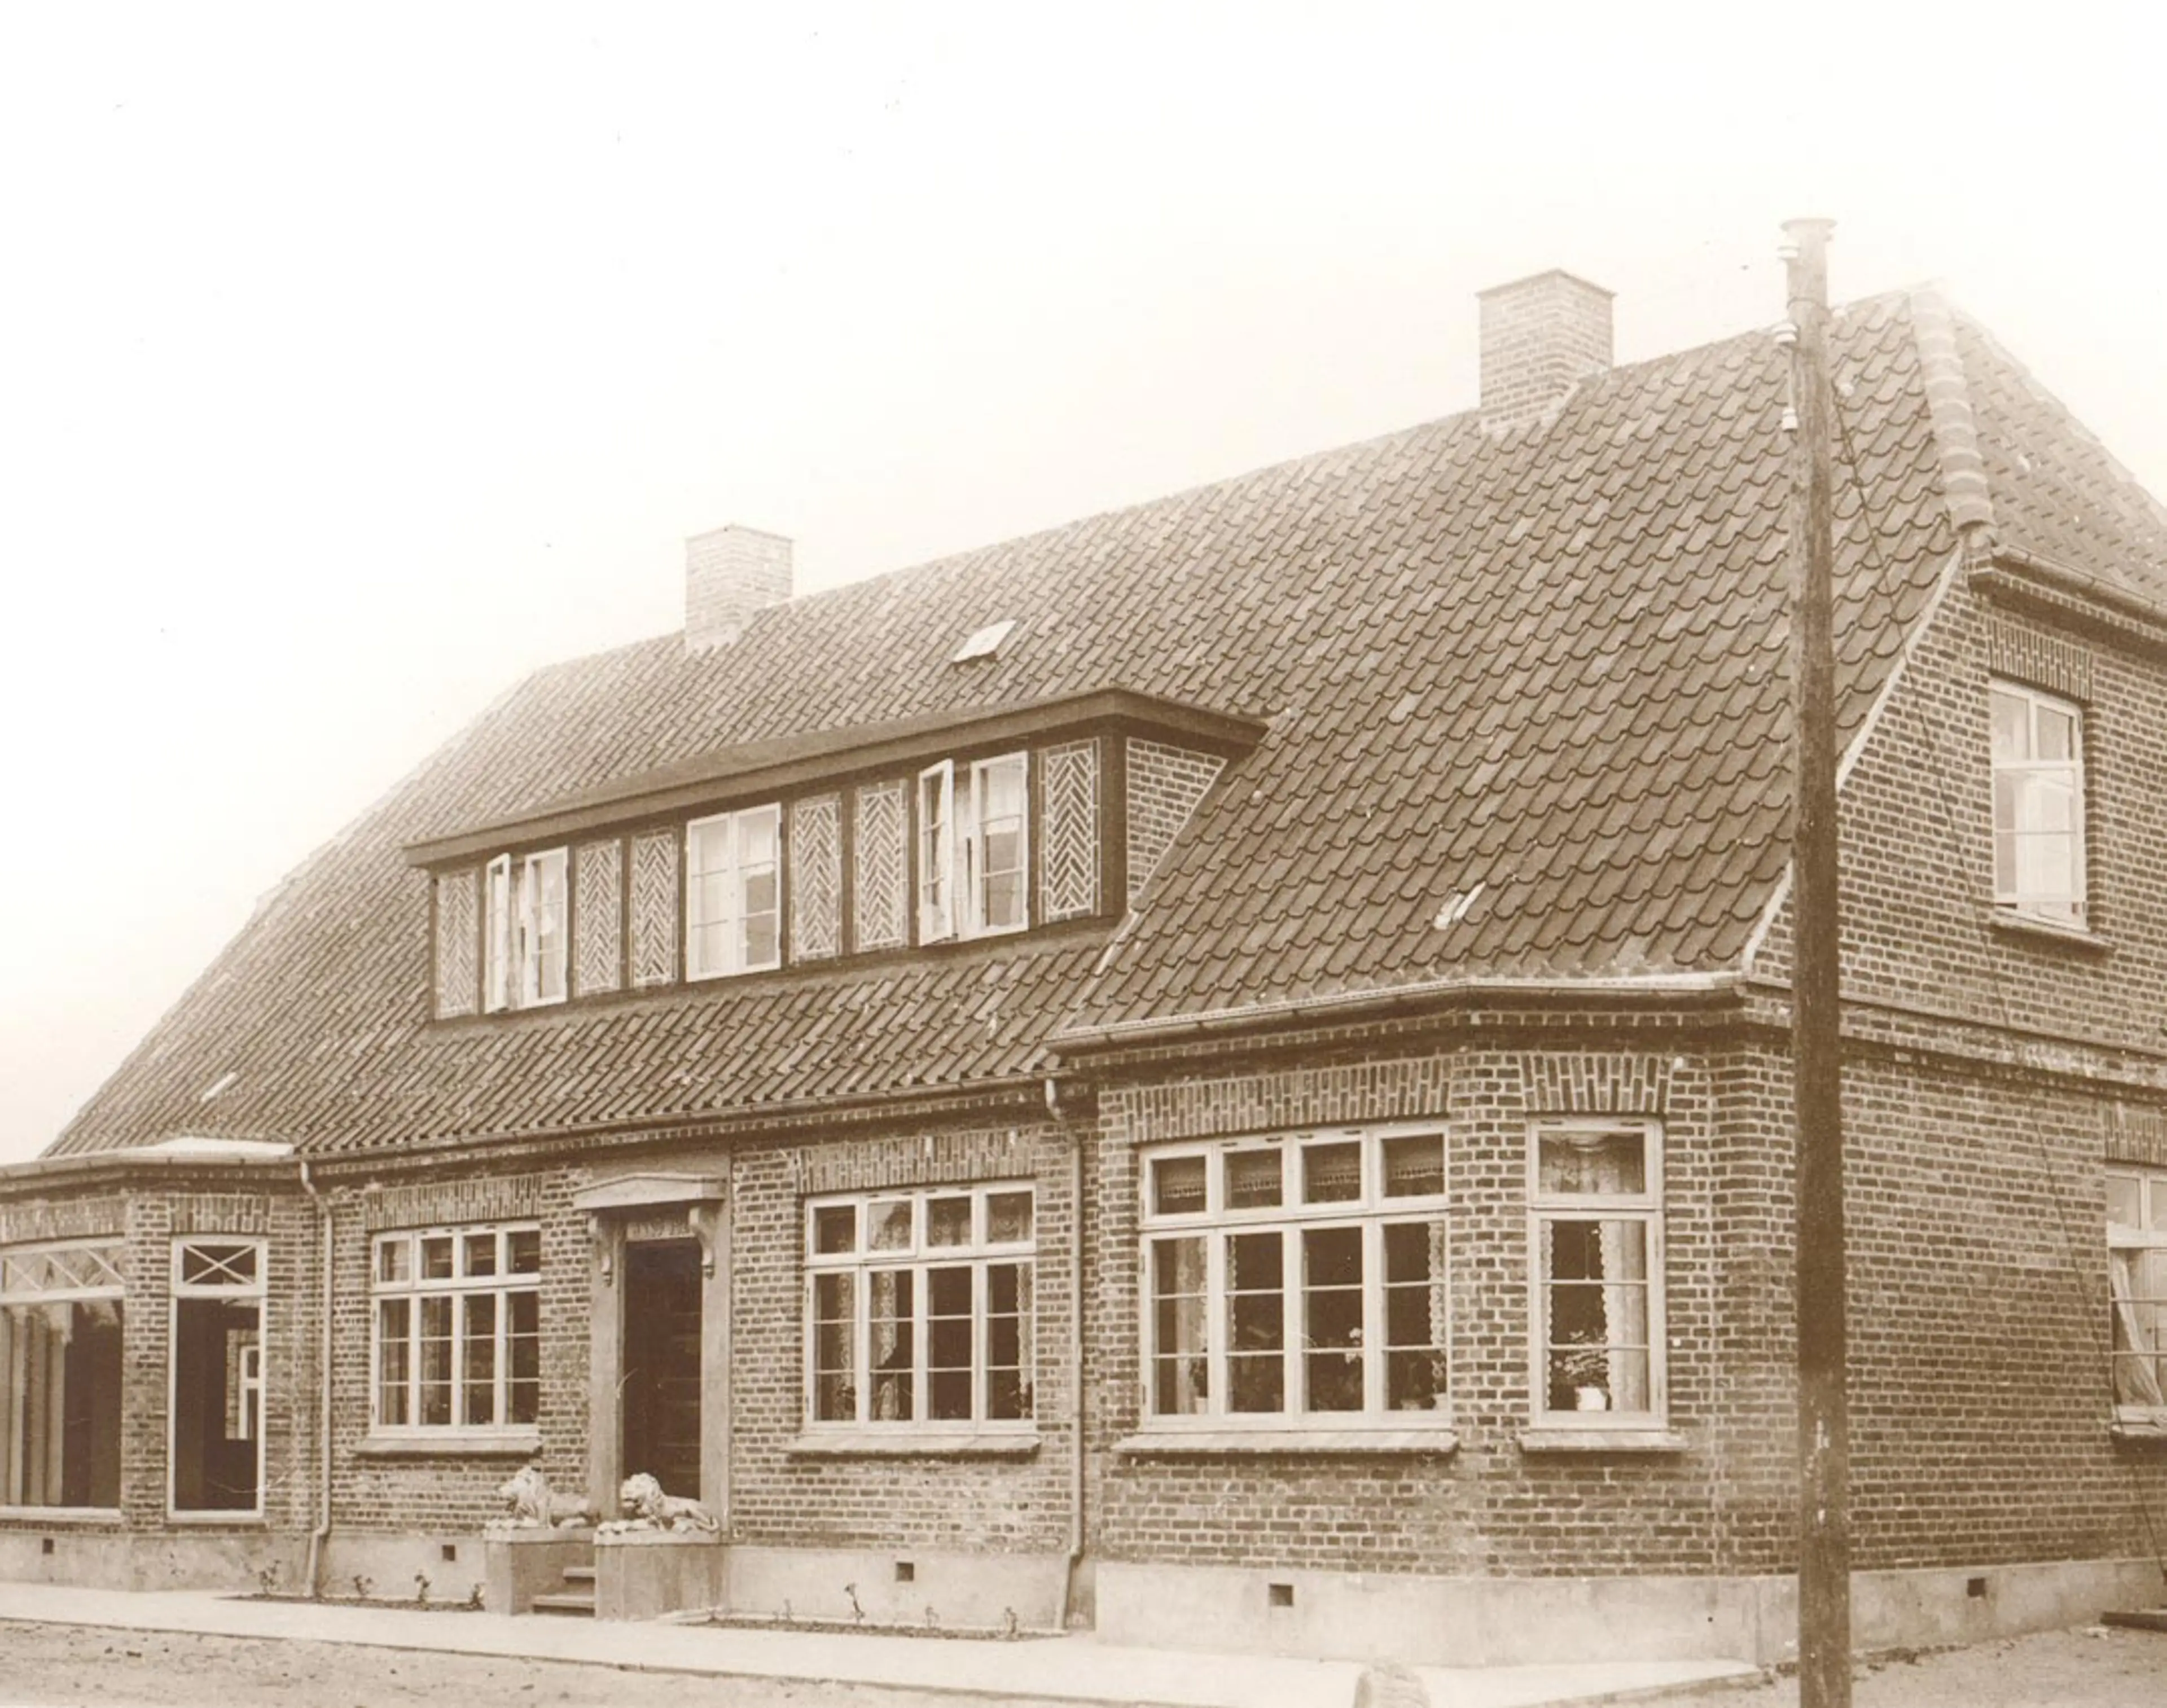 The Kirk Kristiansen family home from 1924